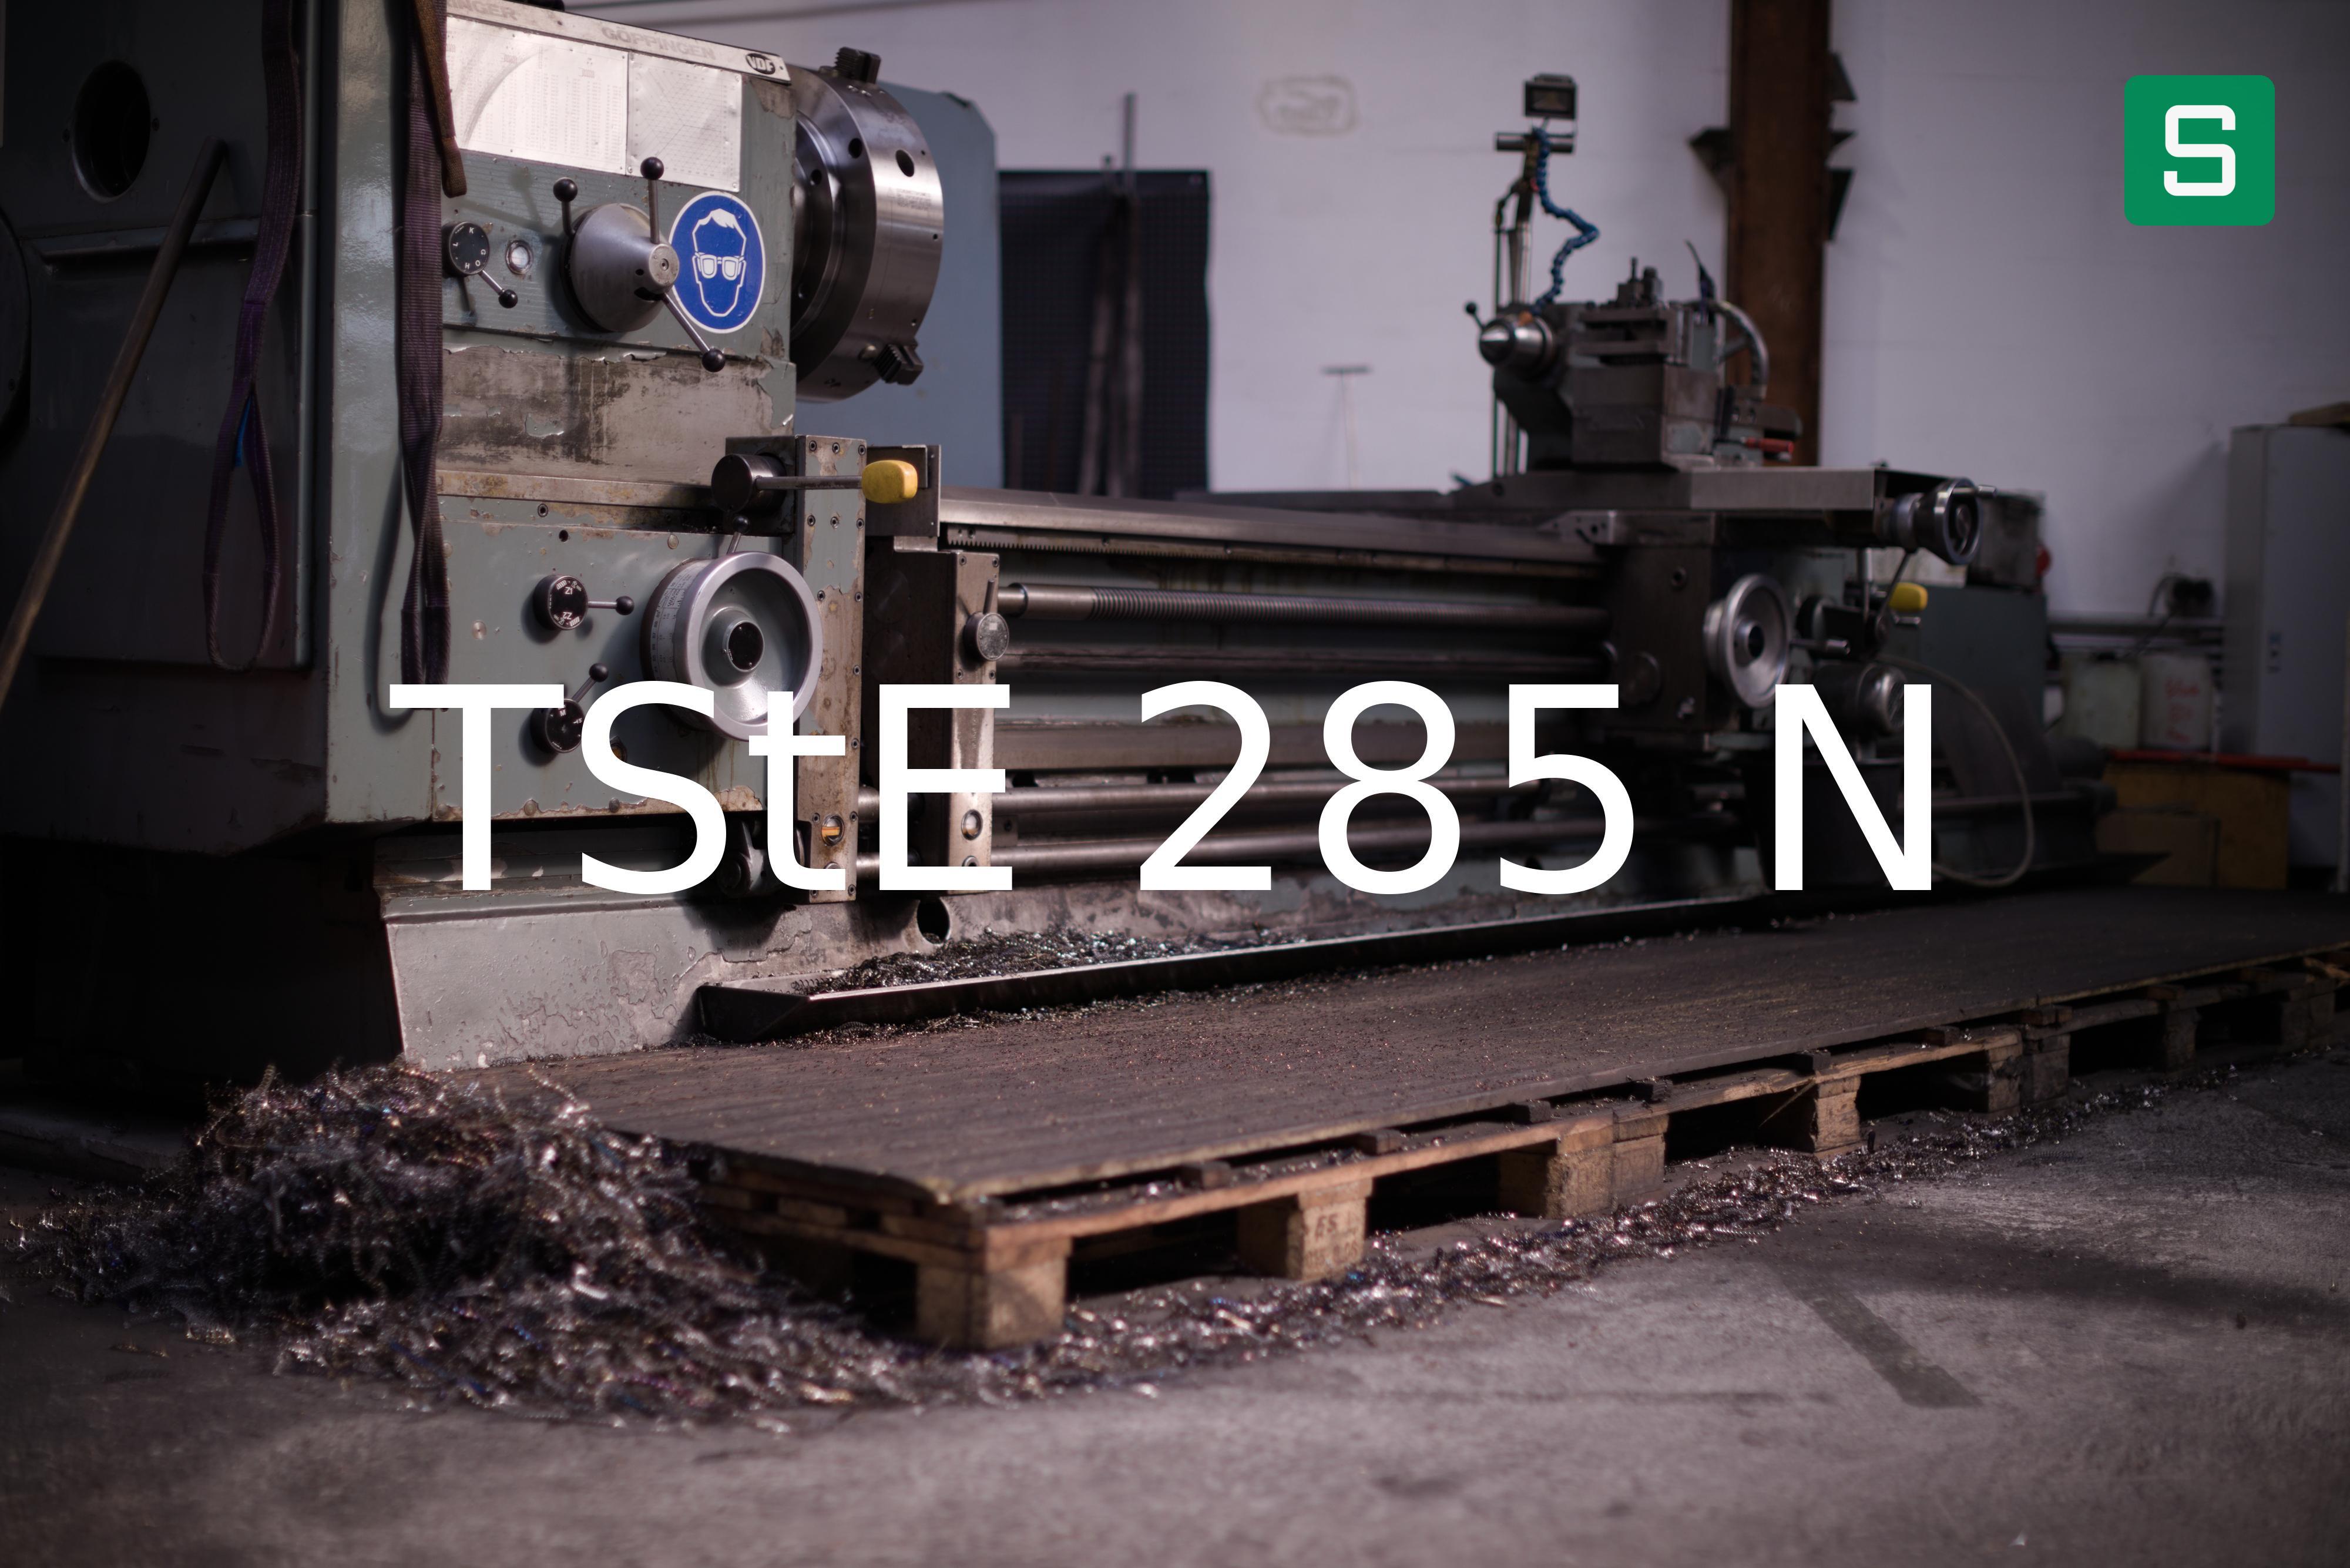 Steel Material: TStE 285 N